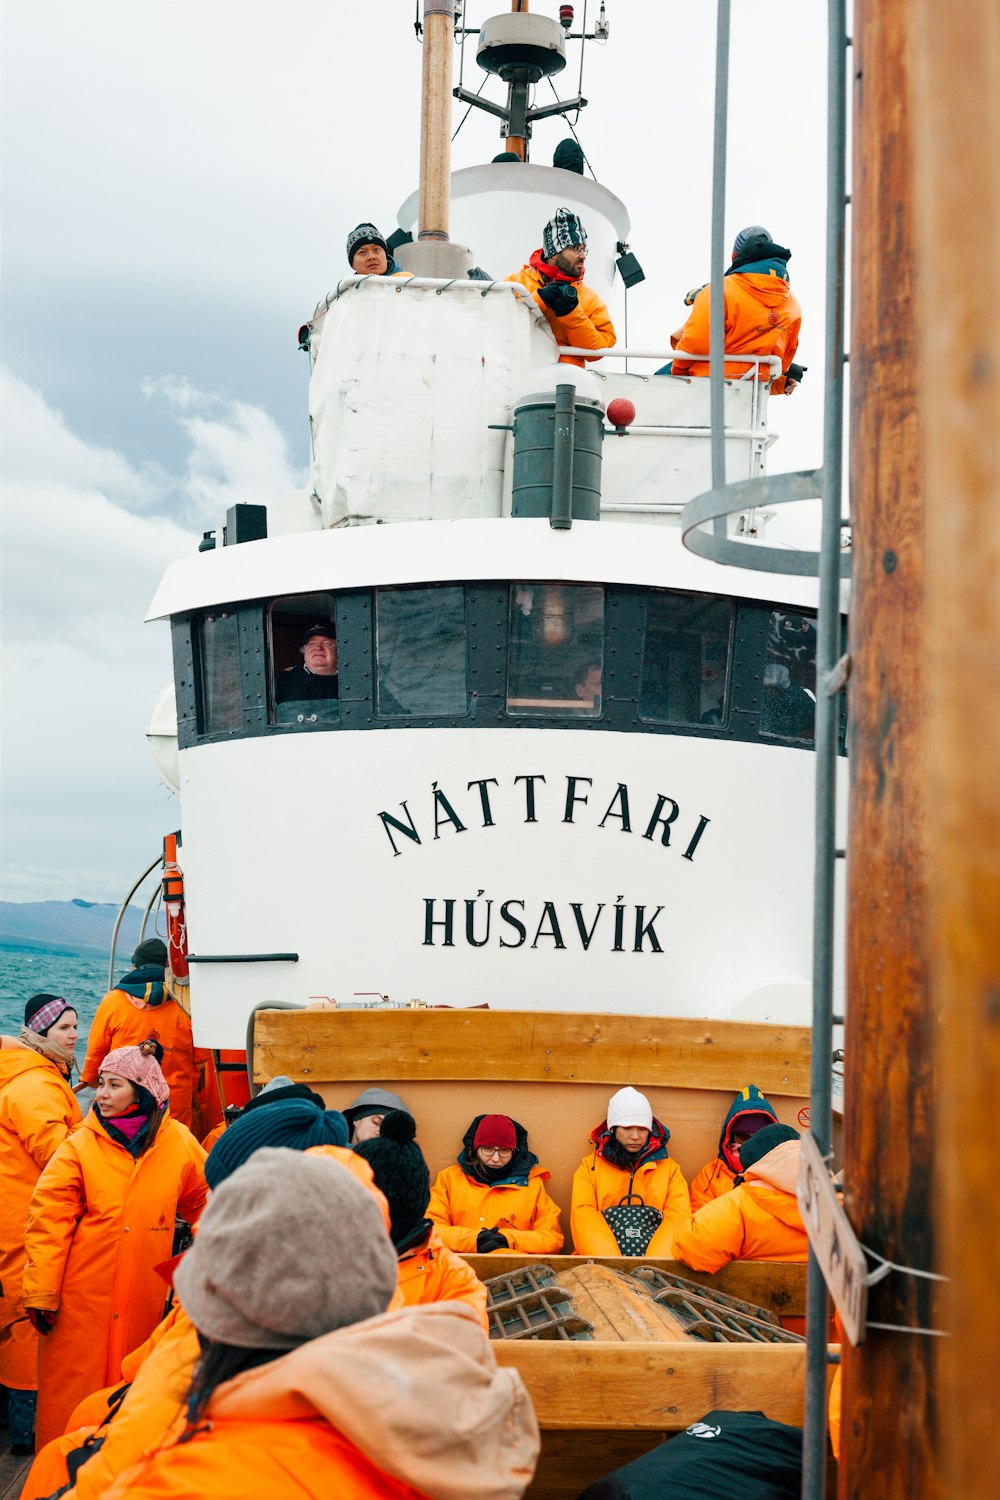 personnes sur le bateau blanc Nattfari Husavik sur le plan d’eau par temps nuageux